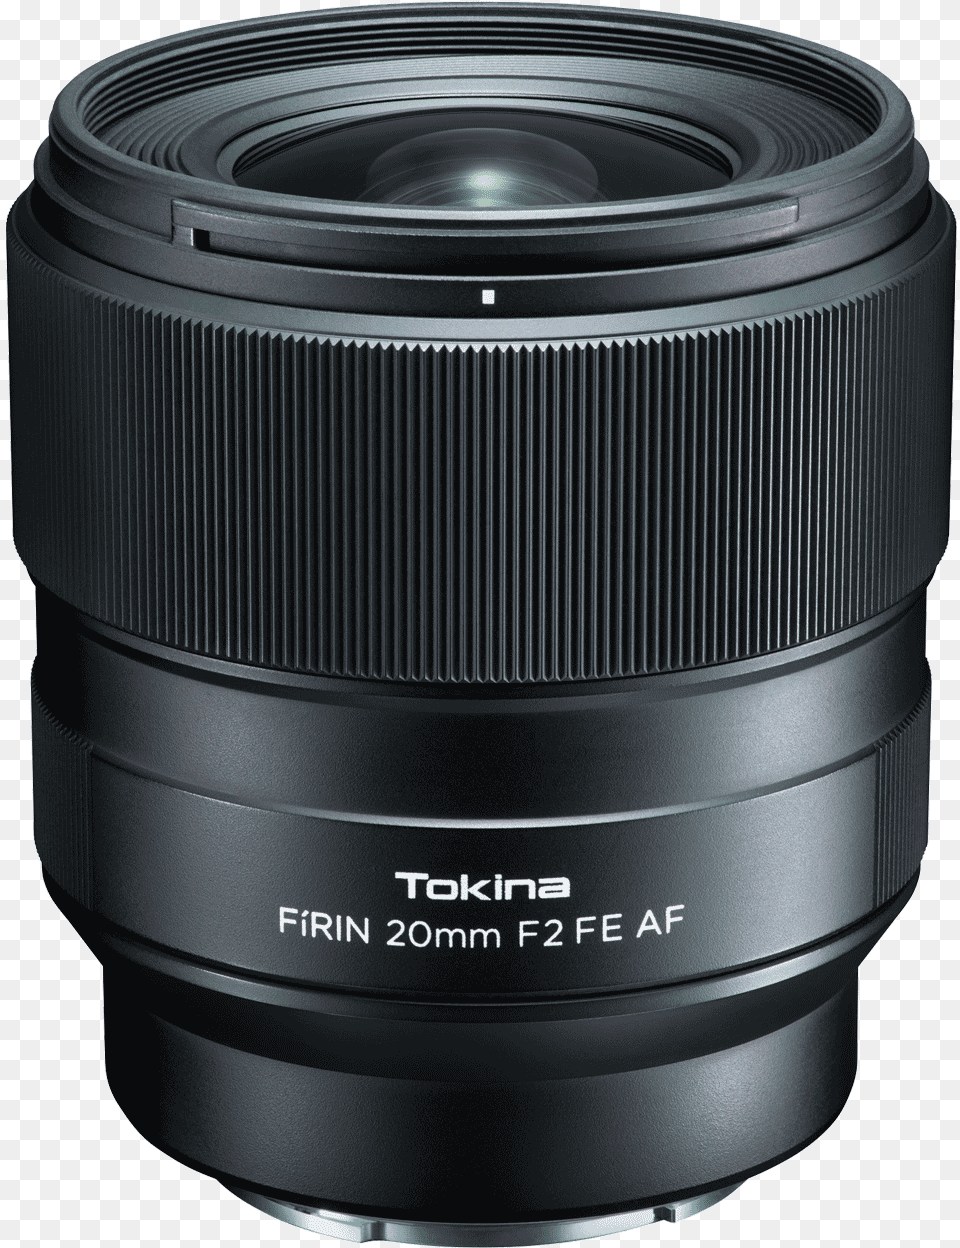 Canon Ef 70 210mm F4 Sample, Camera Lens, Electronics, Speaker Free Transparent Png